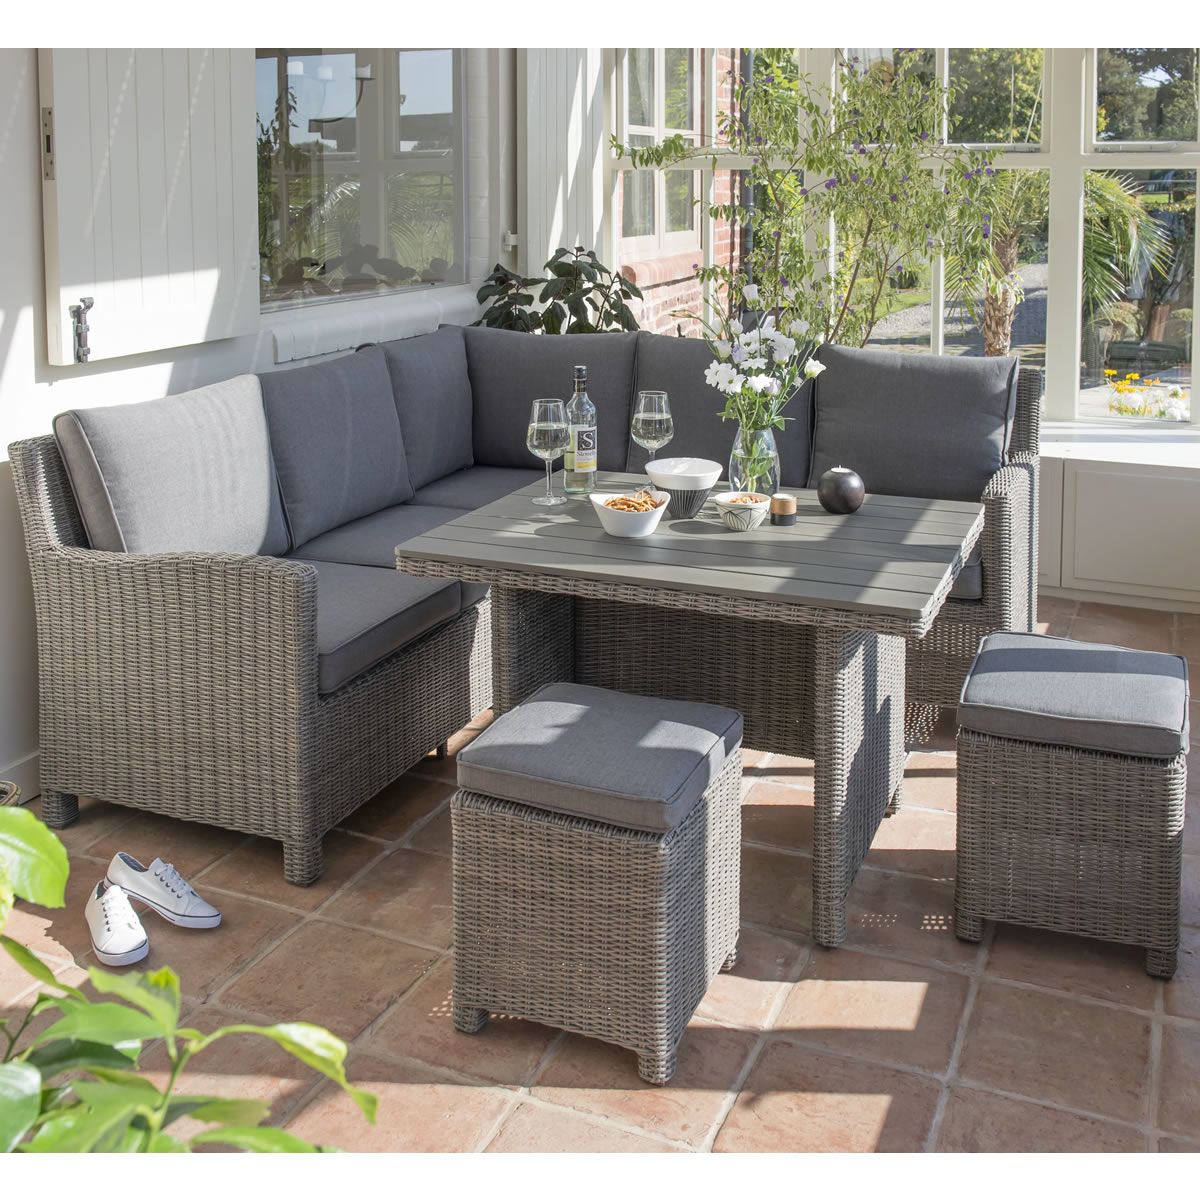 Gartenlounge Polyrattan Schön Edinburgh 7pc Rope Outdoor Garden sofa Dining Set Grey – Artofit